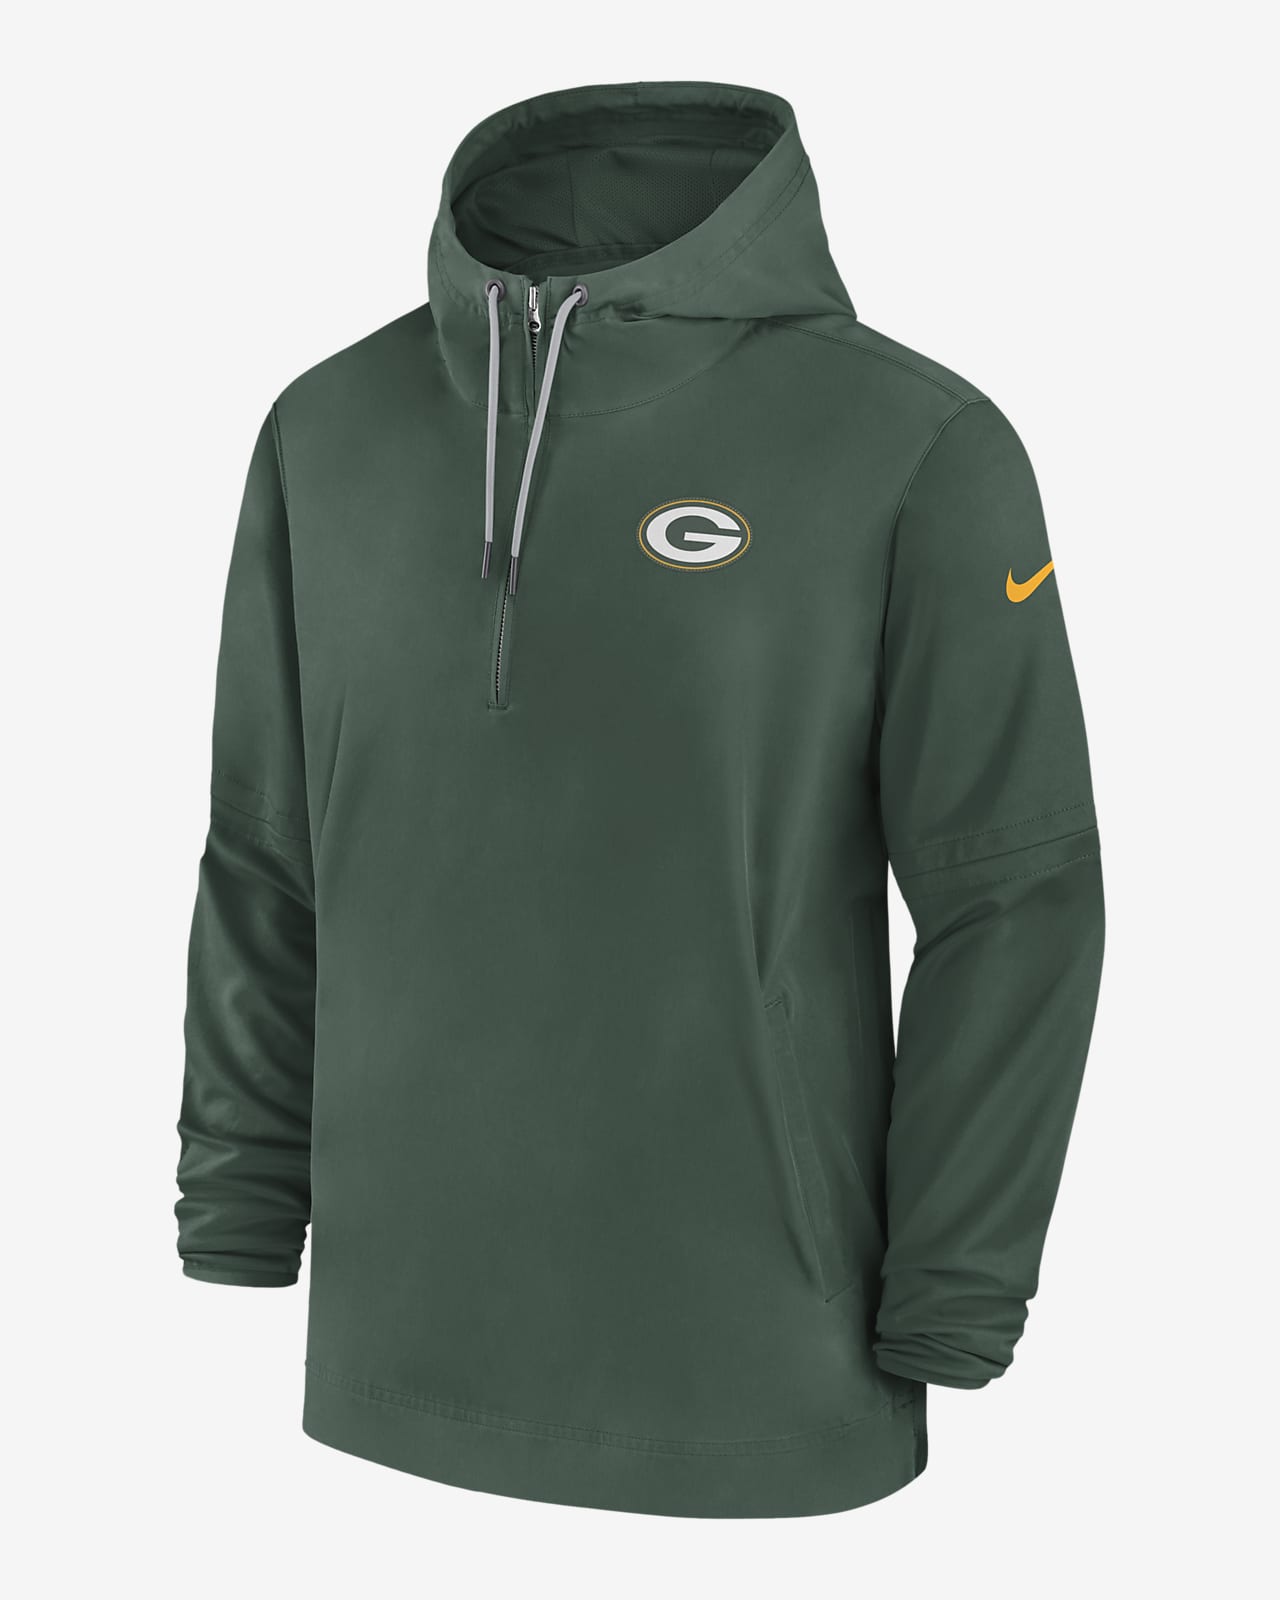 Green Bay Packers Sideline Men’s Nike NFL 1/2-Zip Hooded Jacket